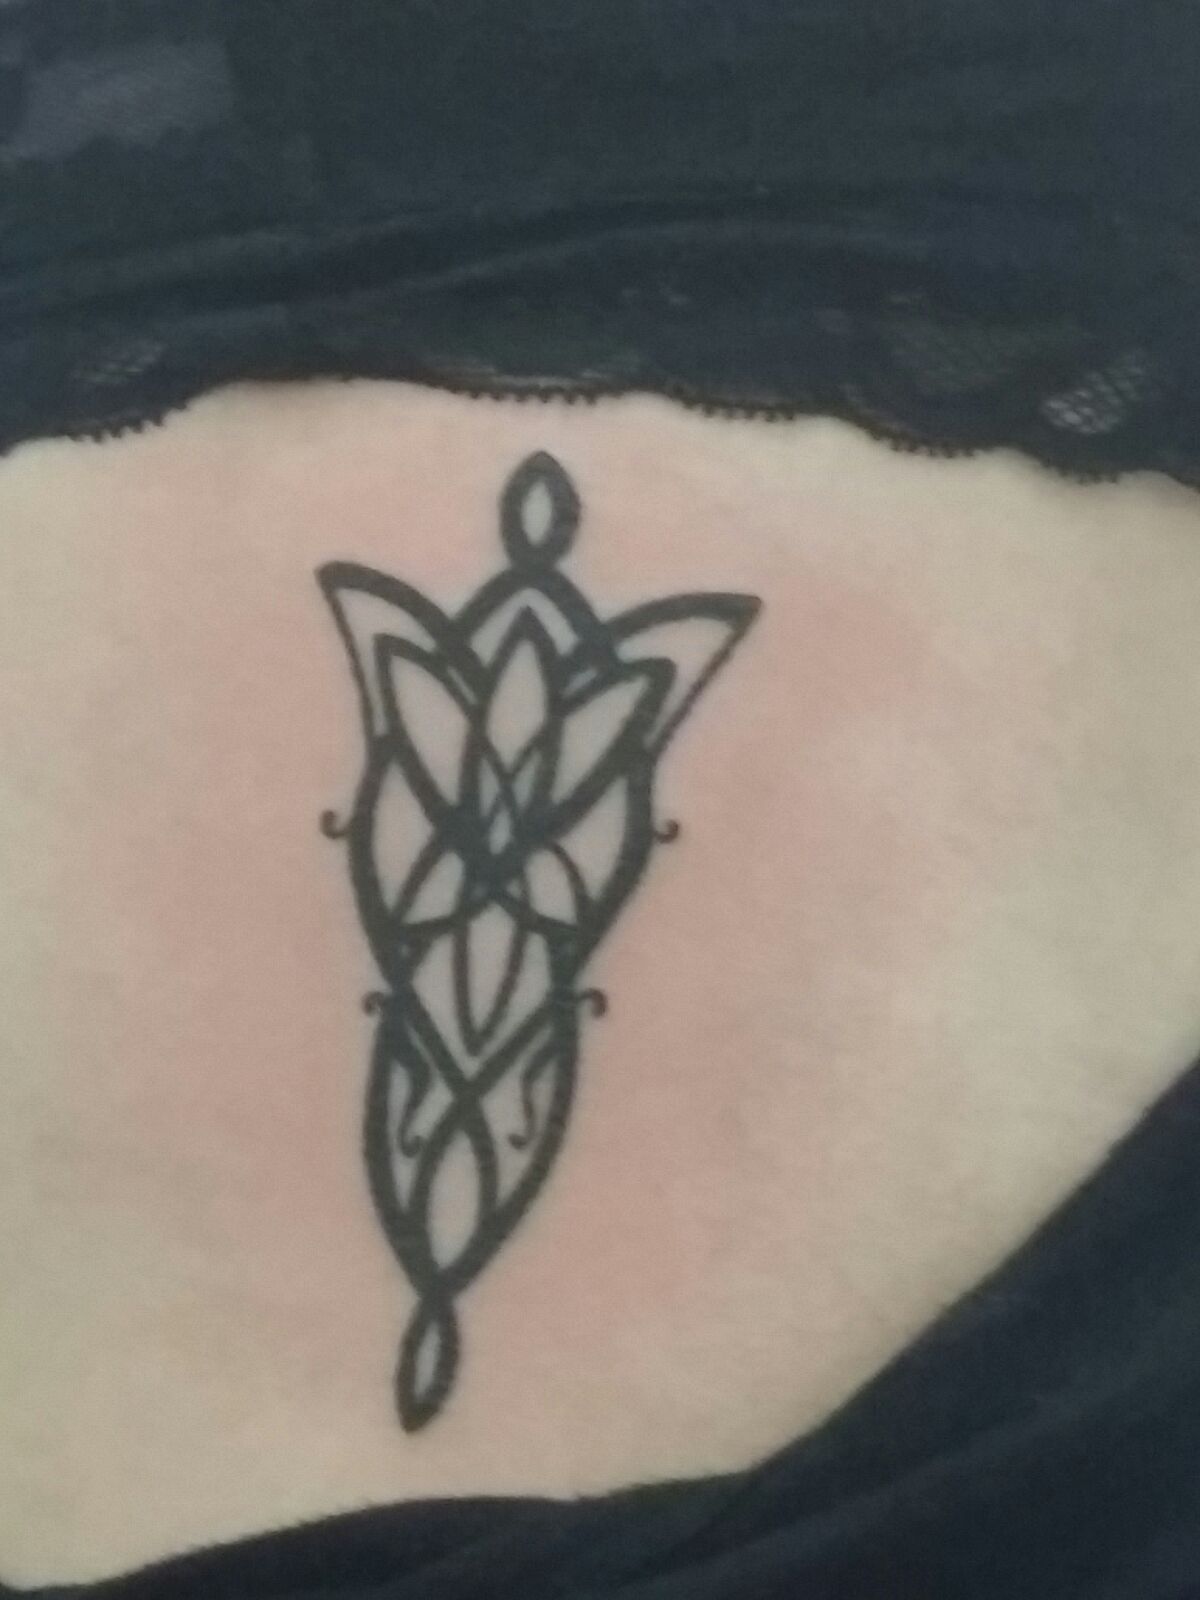 Arwen Evenstar tattoo | Lord of the rings tattoo, Lotr tattoo, Tattoos